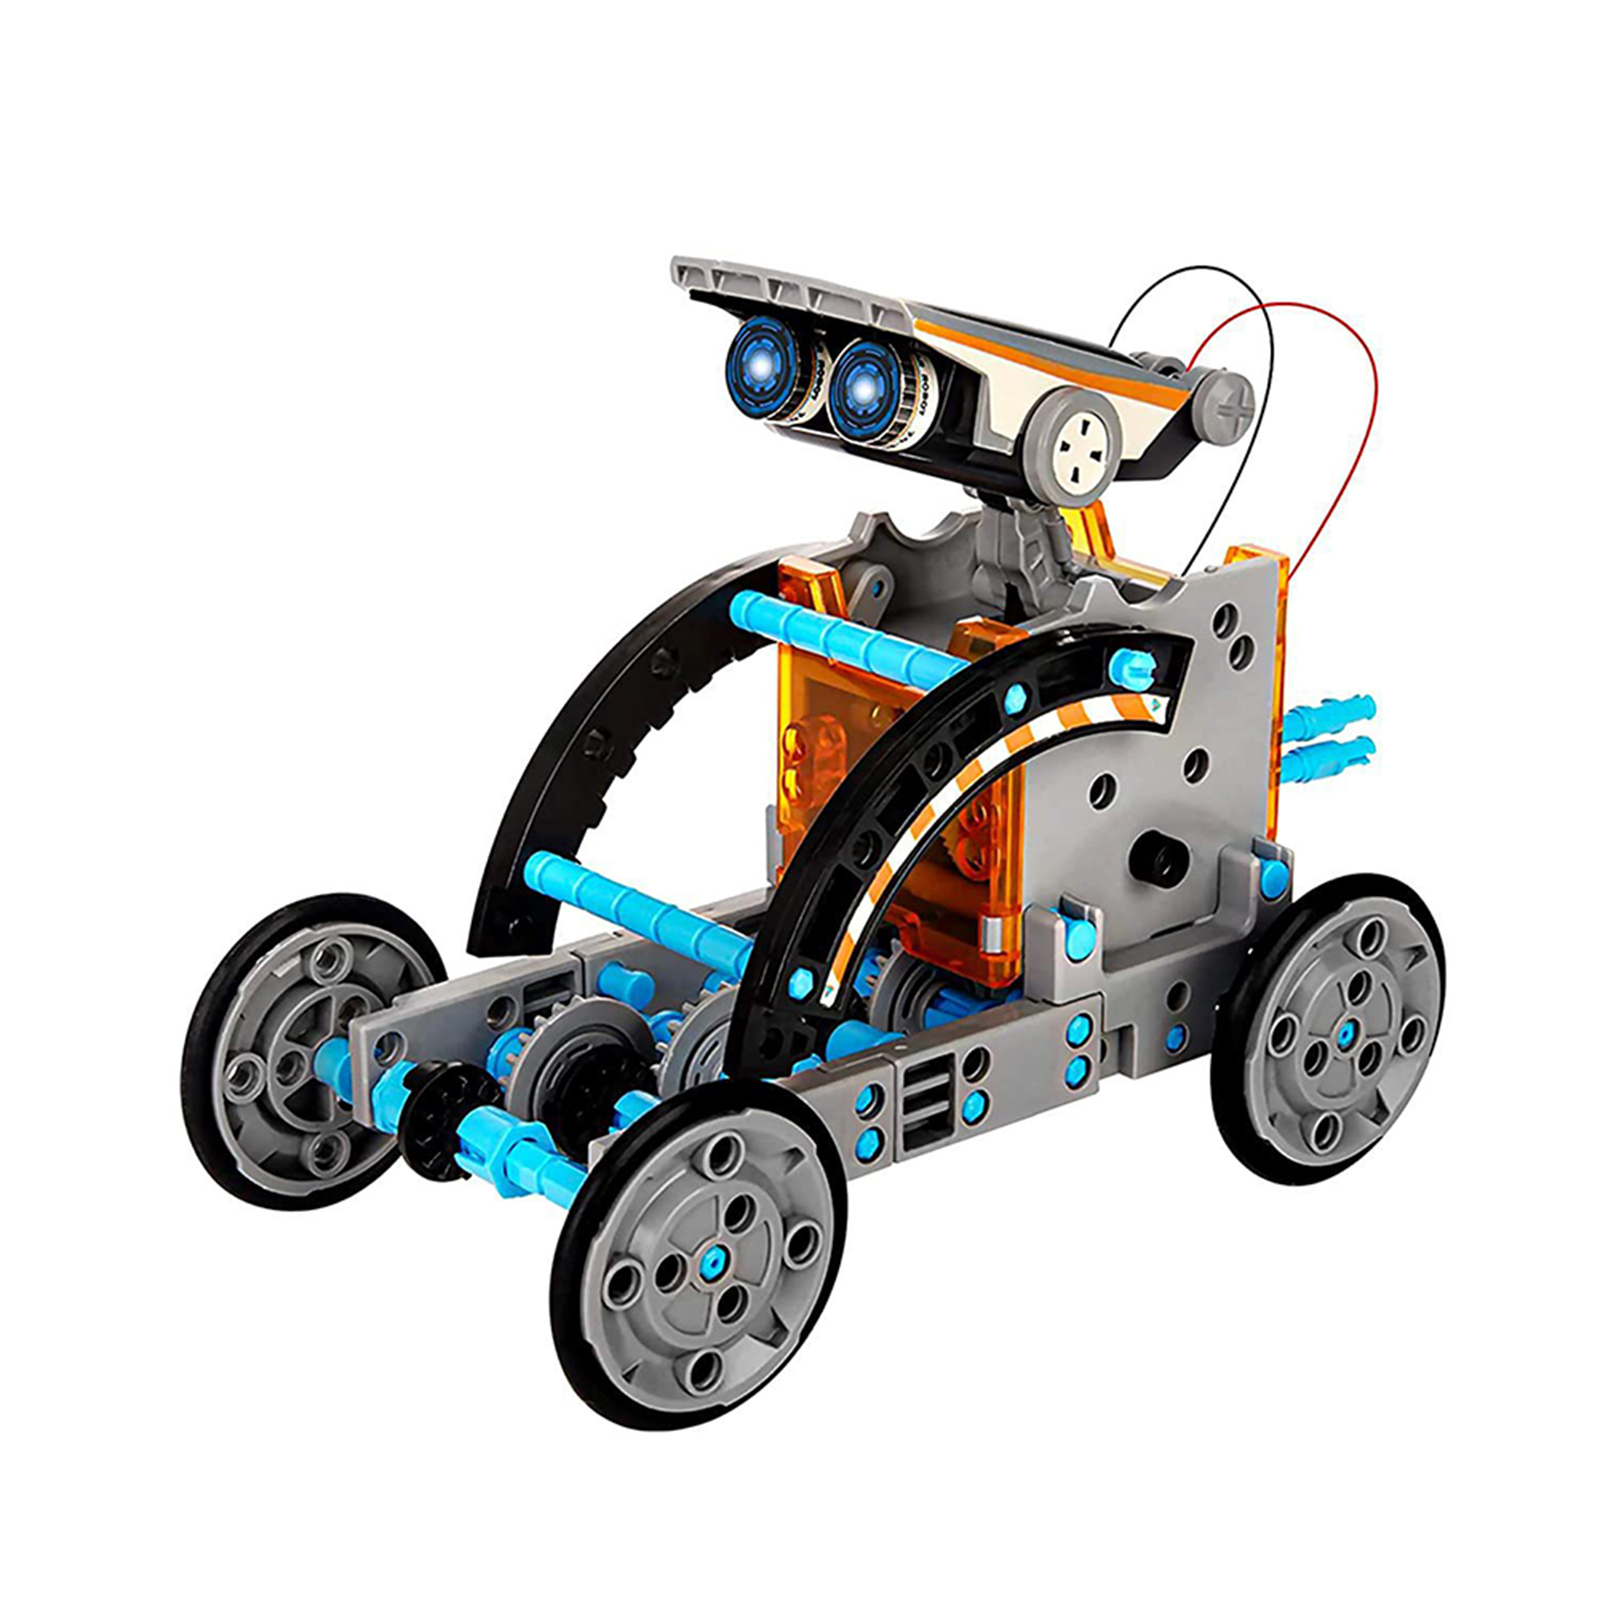 13-in-1 Science Solar Robot Kit For Kids STEM DIY Solar Powered Building Blocks Educational Toys For Boys Girls